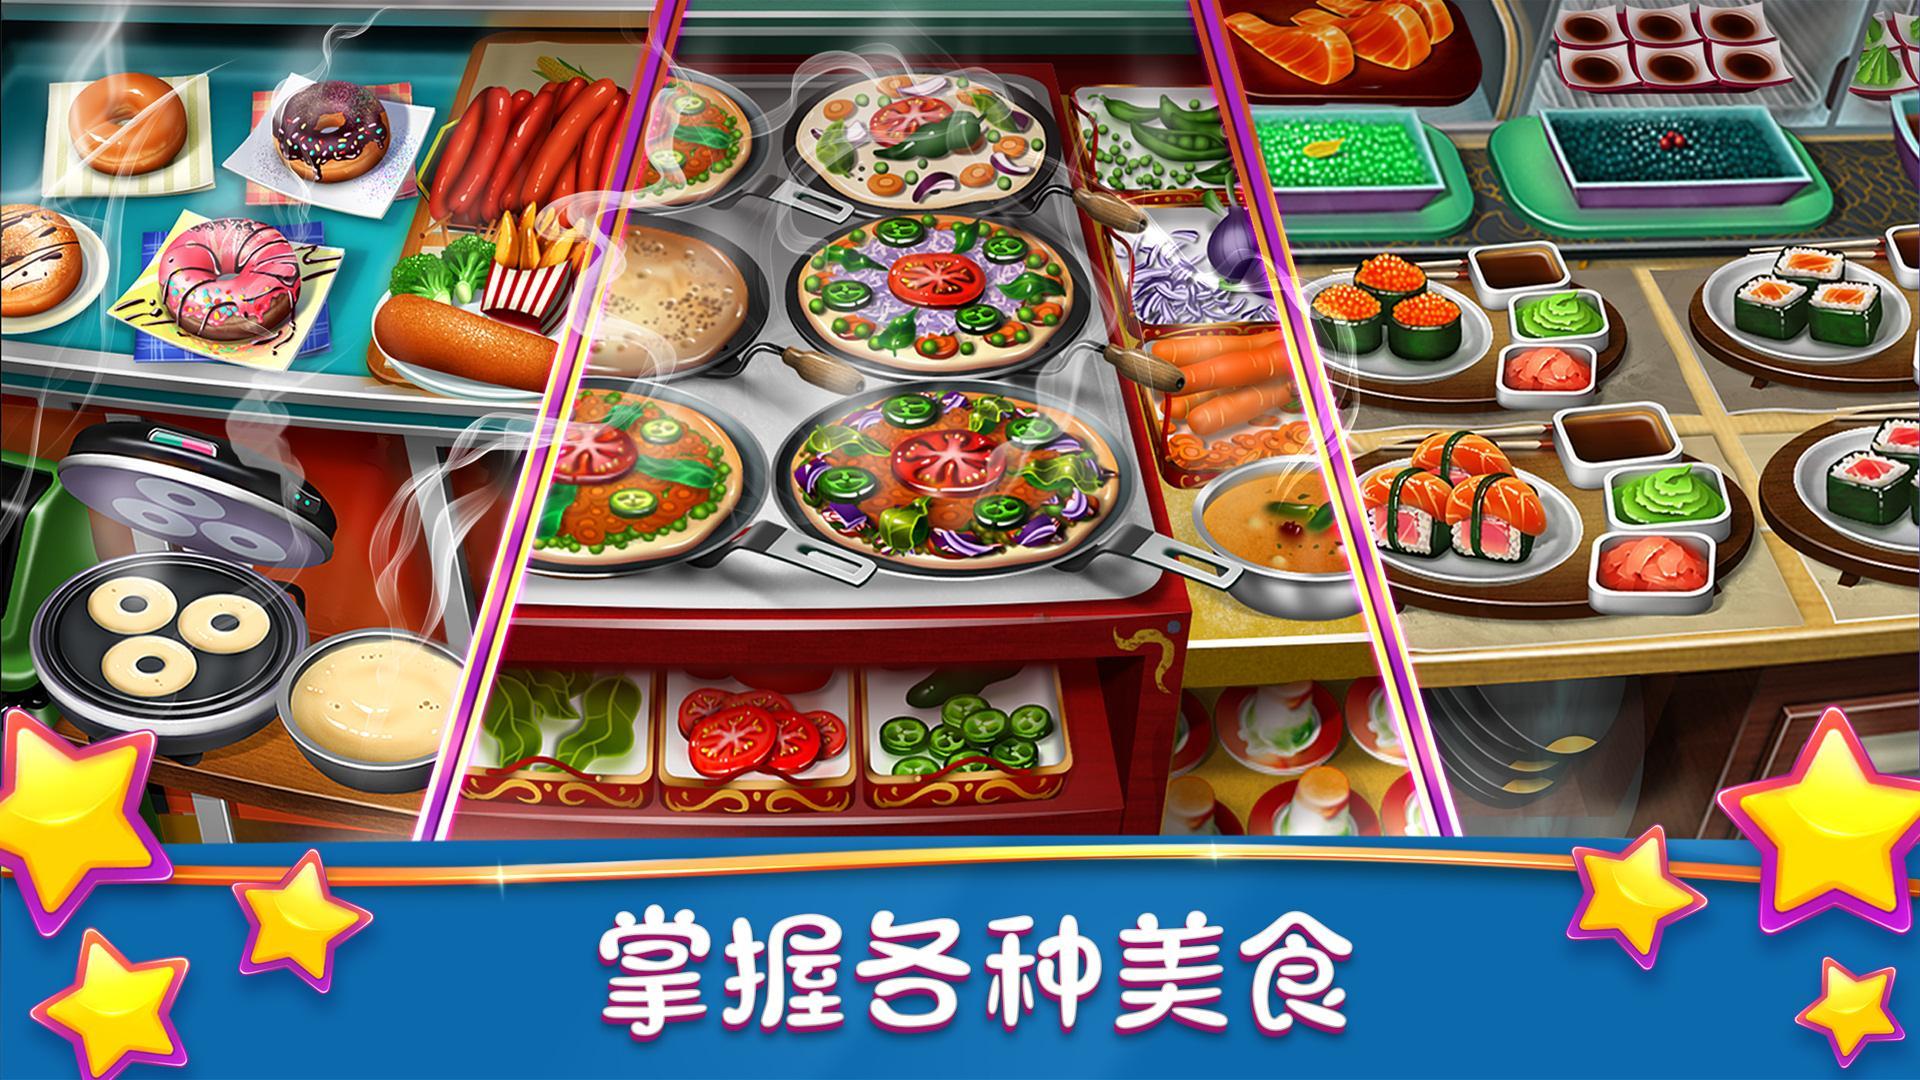 模拟烹饪的手机游戏_模拟烹饪游戏3d中文版_模拟烹饪餐厅游戏